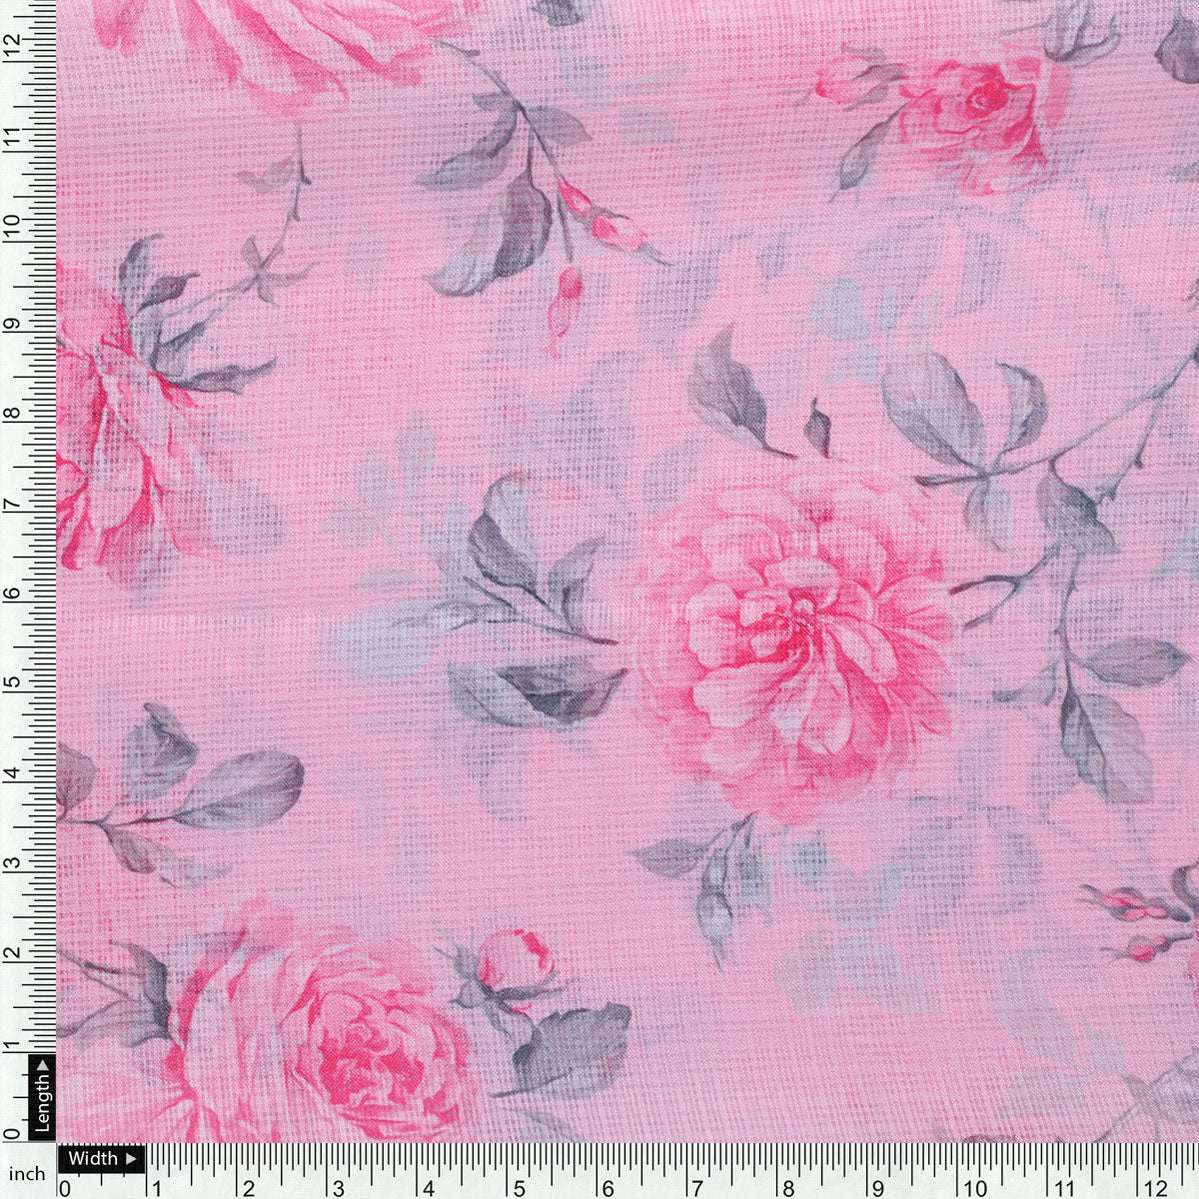 Pink Rose Allover Digital Printed Fabric - Kota Doria